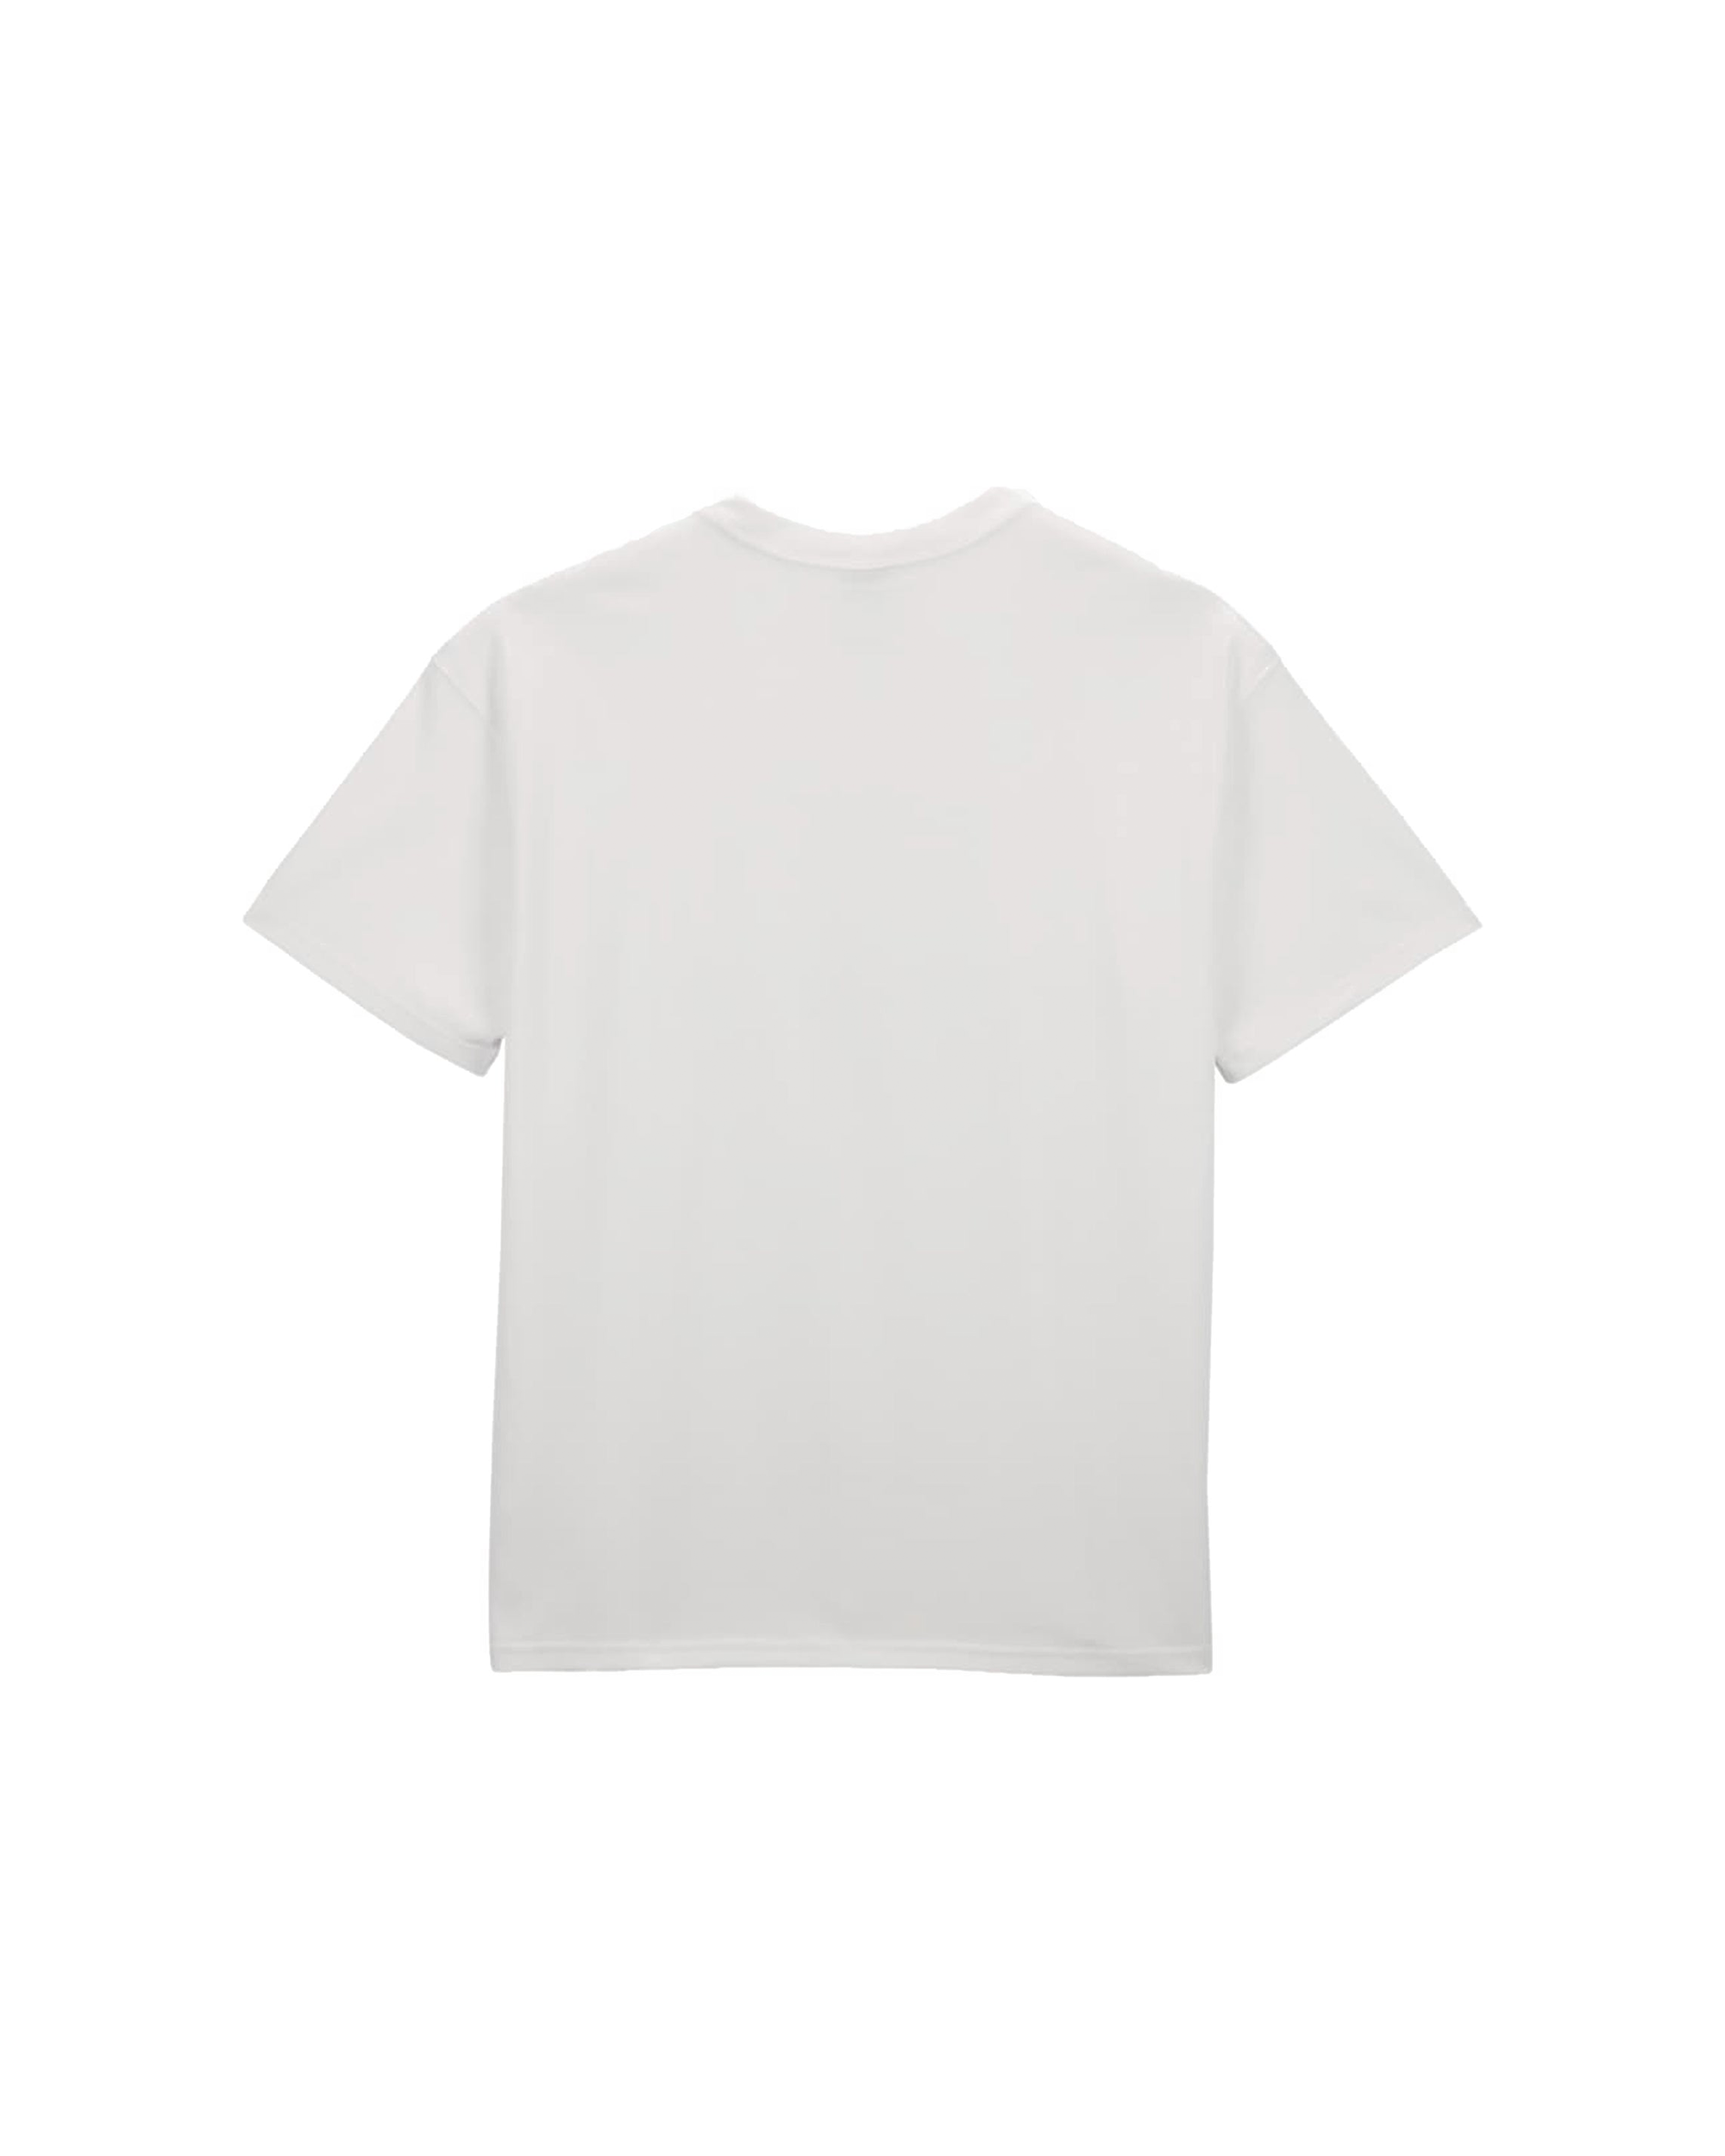 Wildwood T-Shirt - Summit White